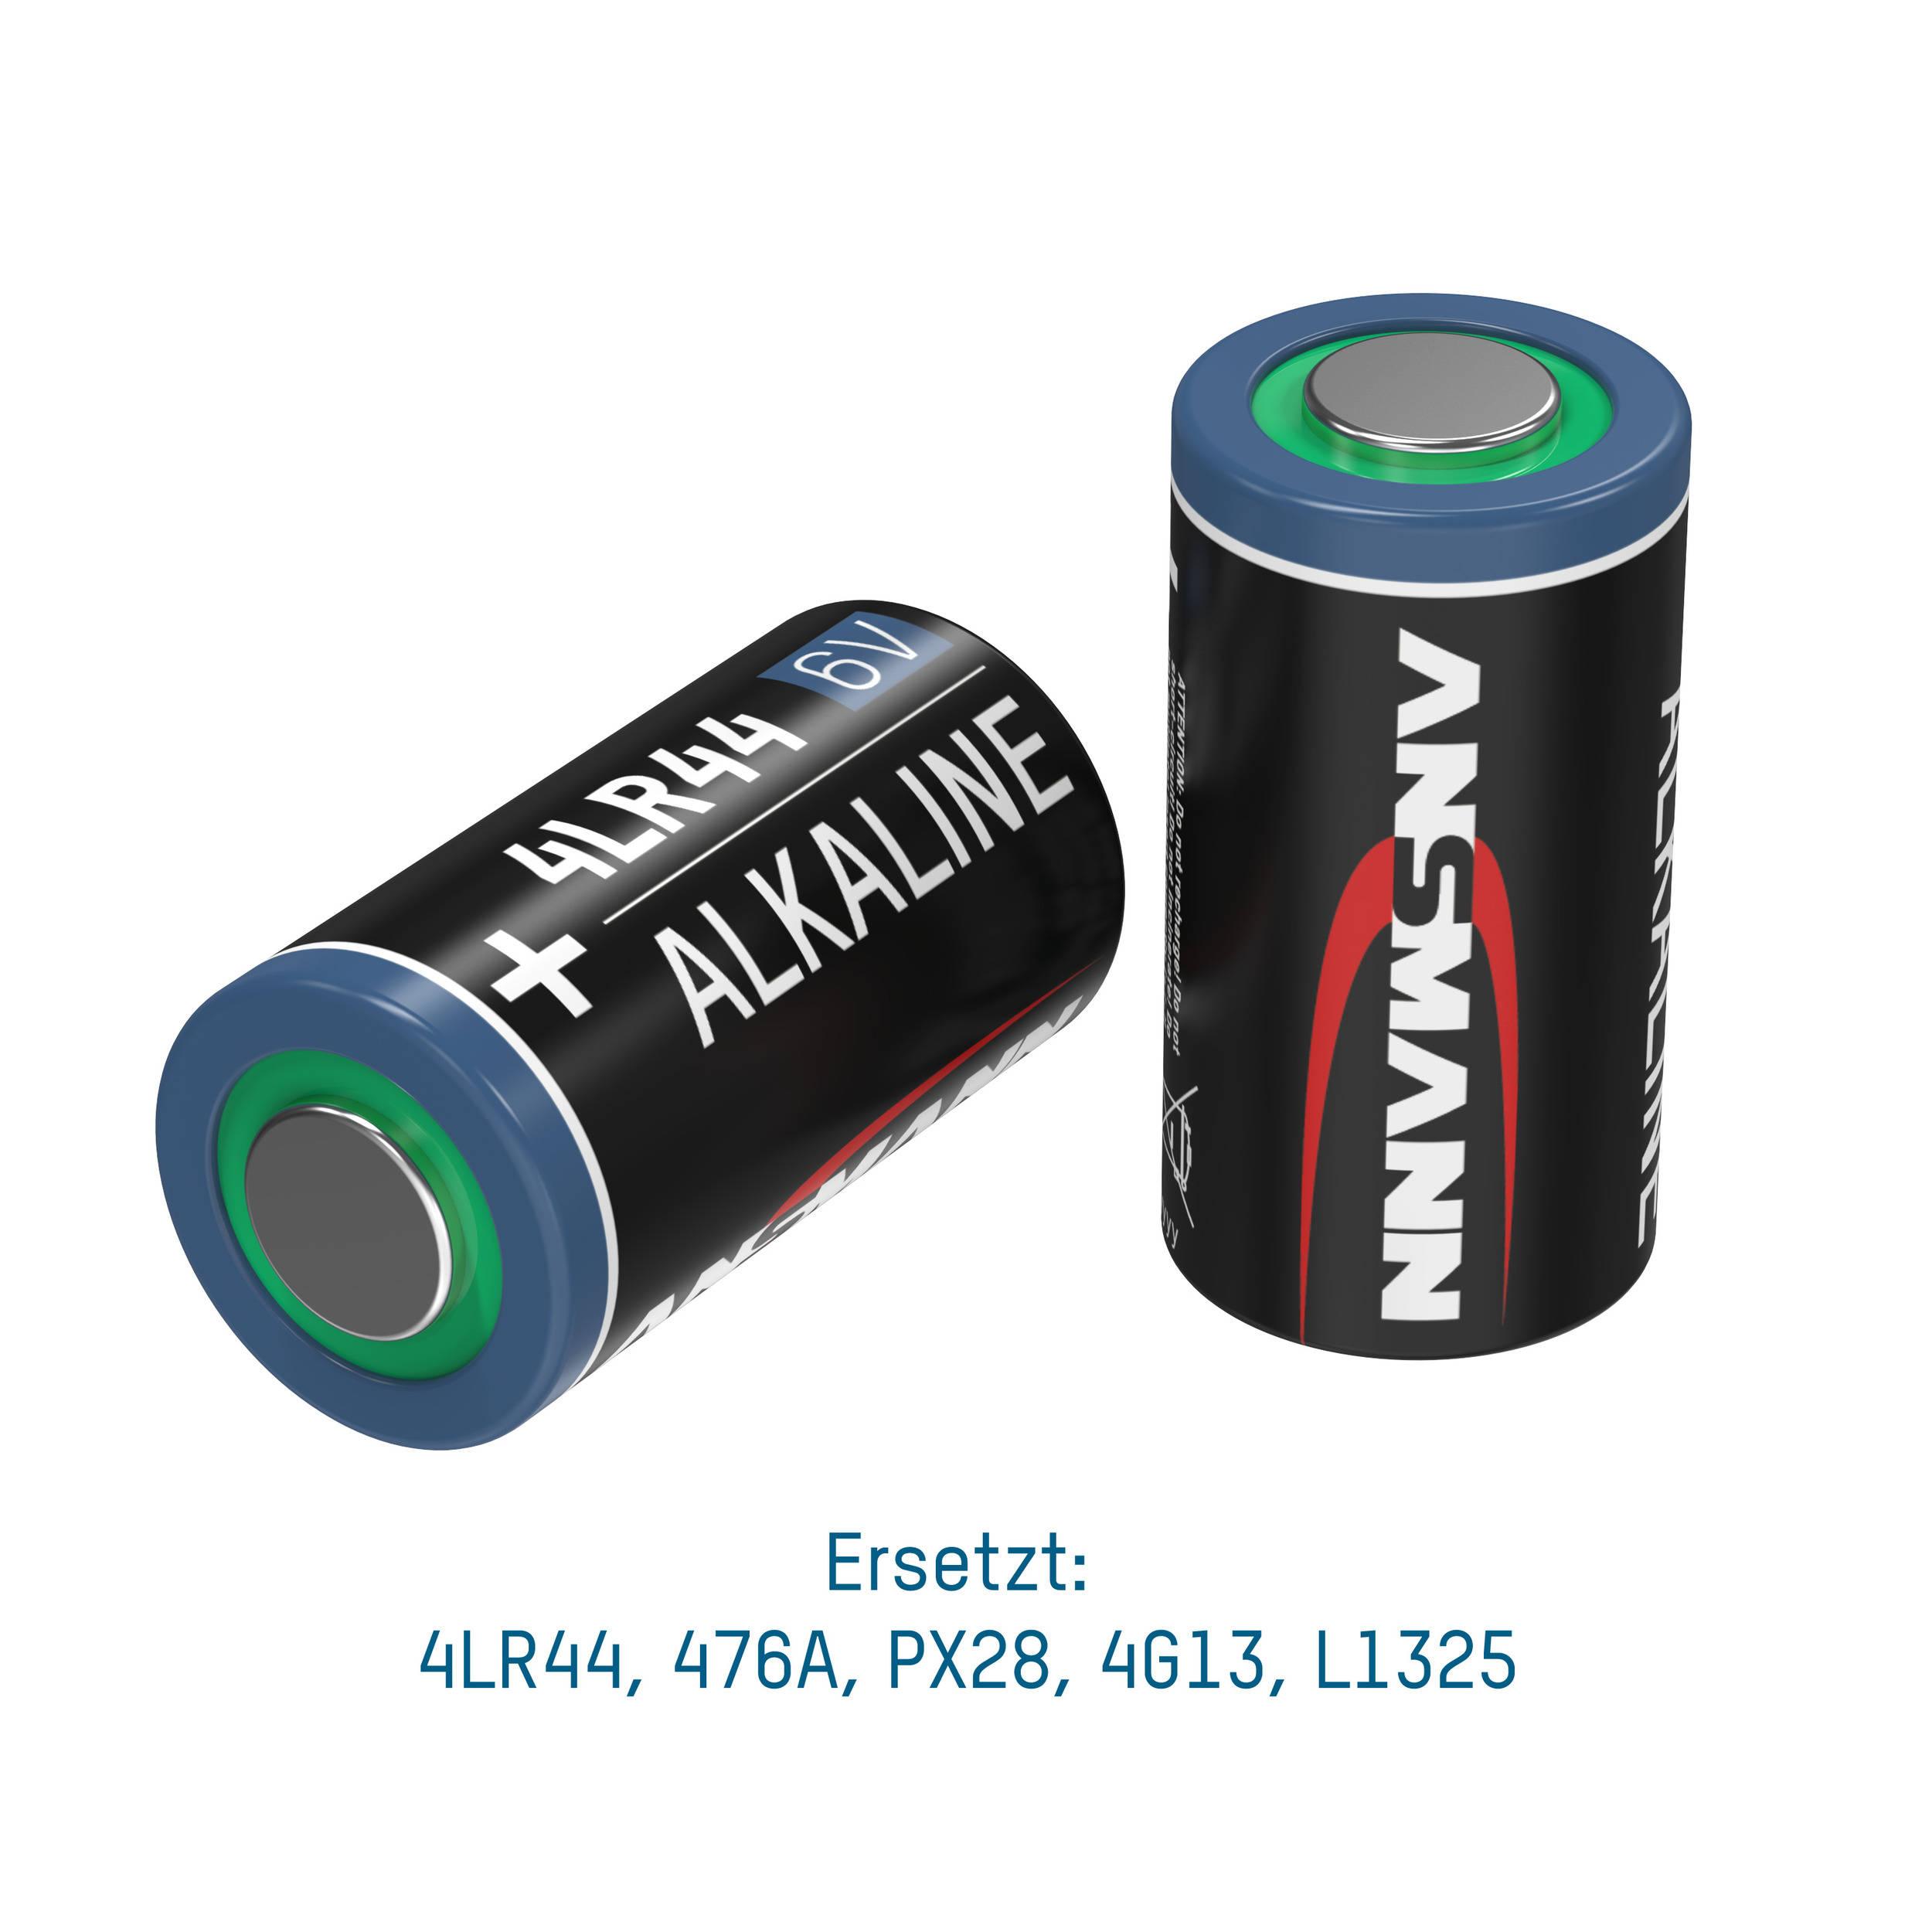 ANSMANN ANSMANN 4LR44 6 Pack 6V Volt Batterie, Alkaline Spezialbatterien - Spezialbatterie 8er Batterie